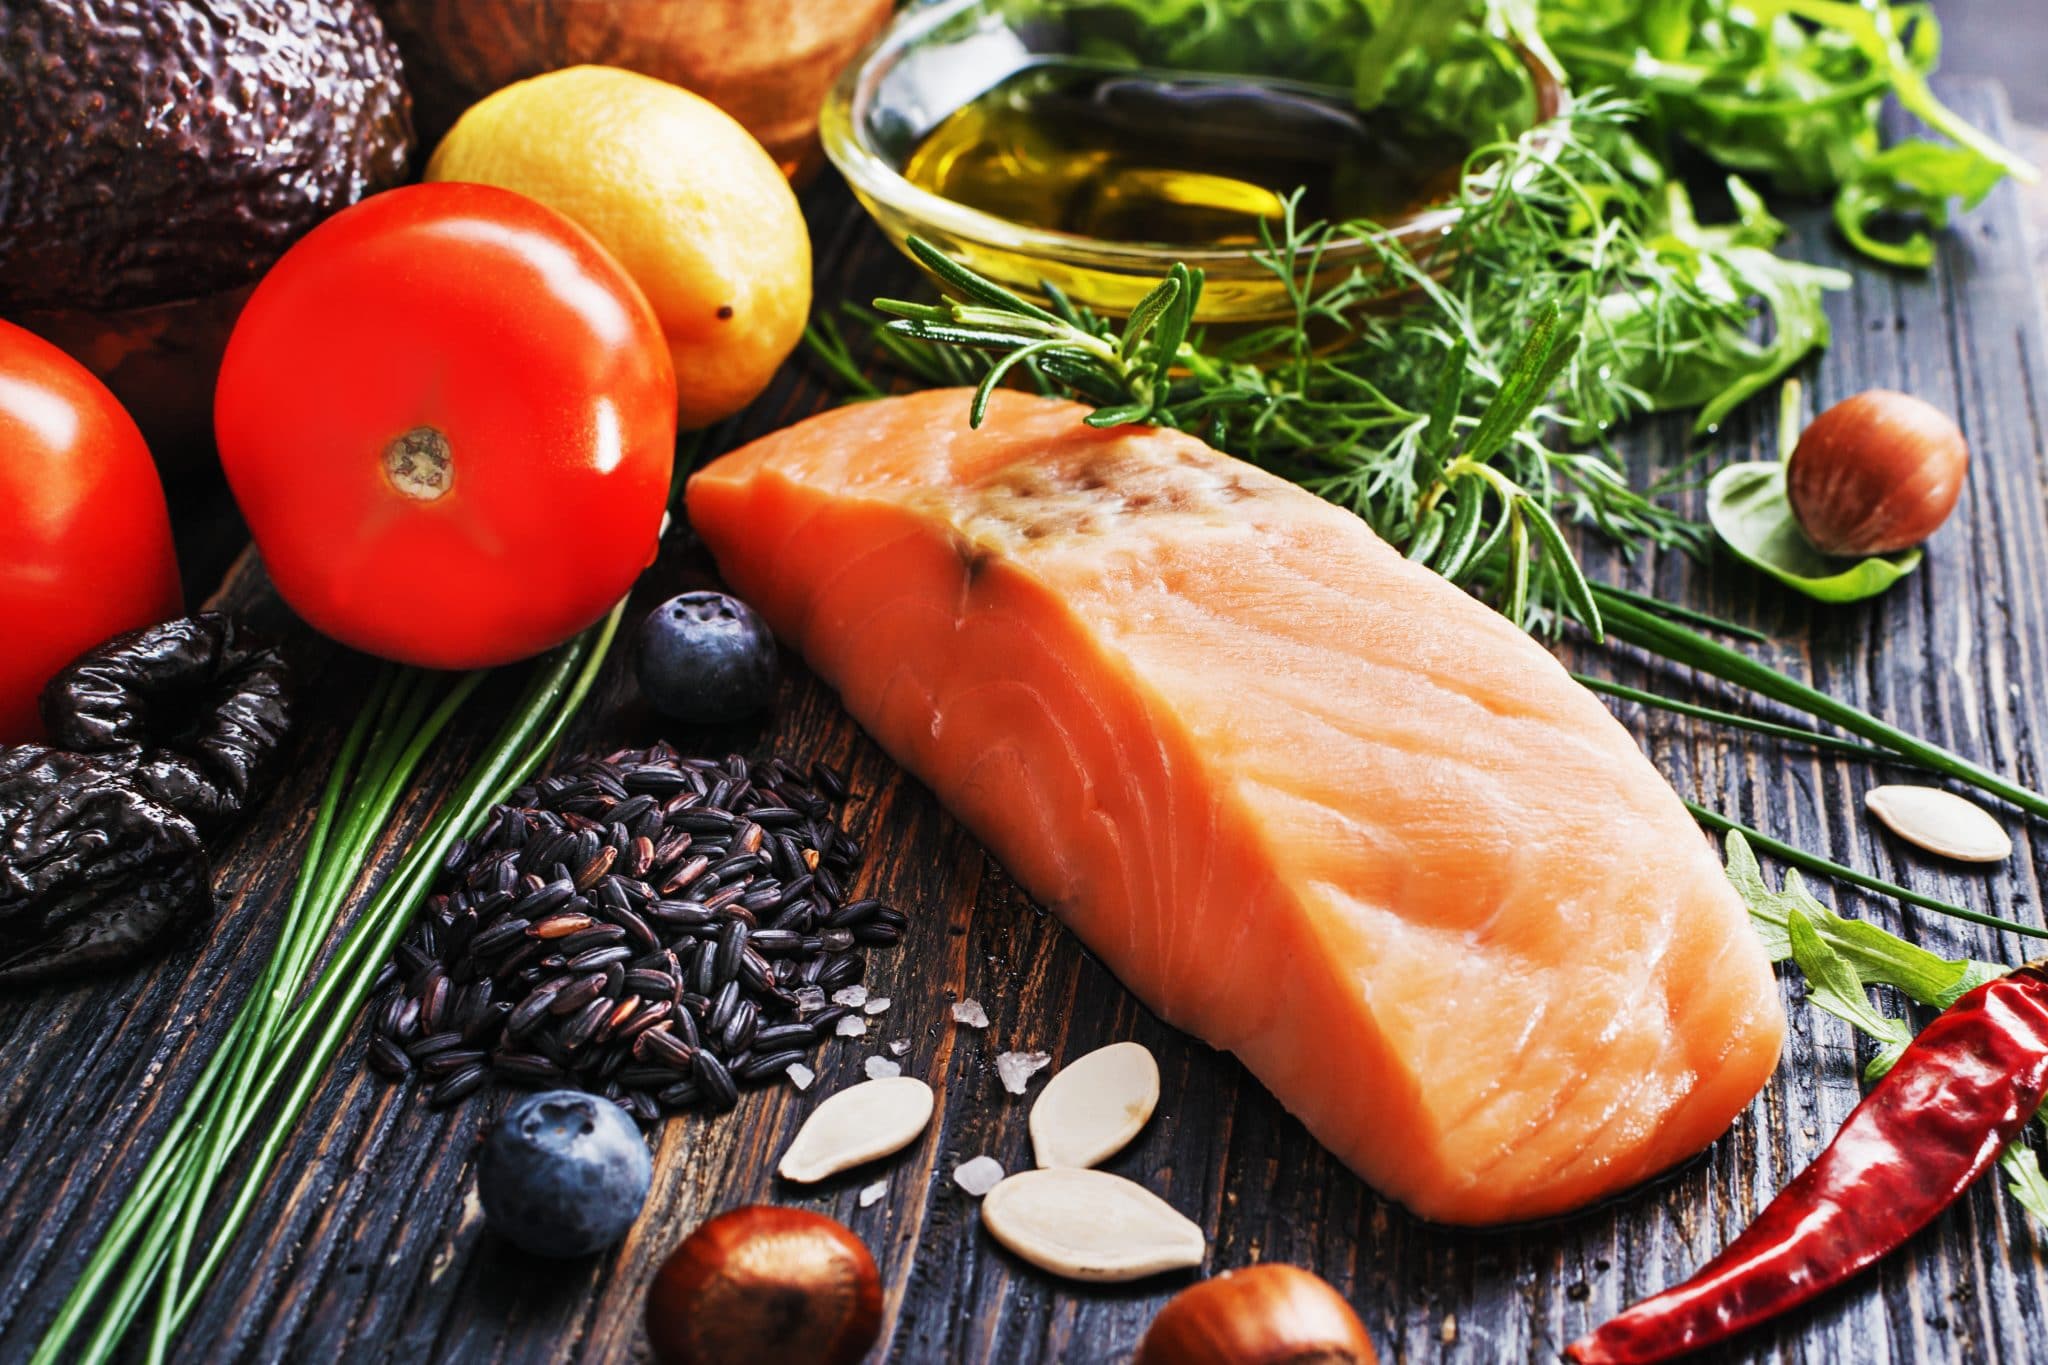 Filet de saumon frais entouré d'un assortiment d'ingrédients sains sur une surface en bois, servant de guide ultime pour mieux connaître une alimentation nutritive.